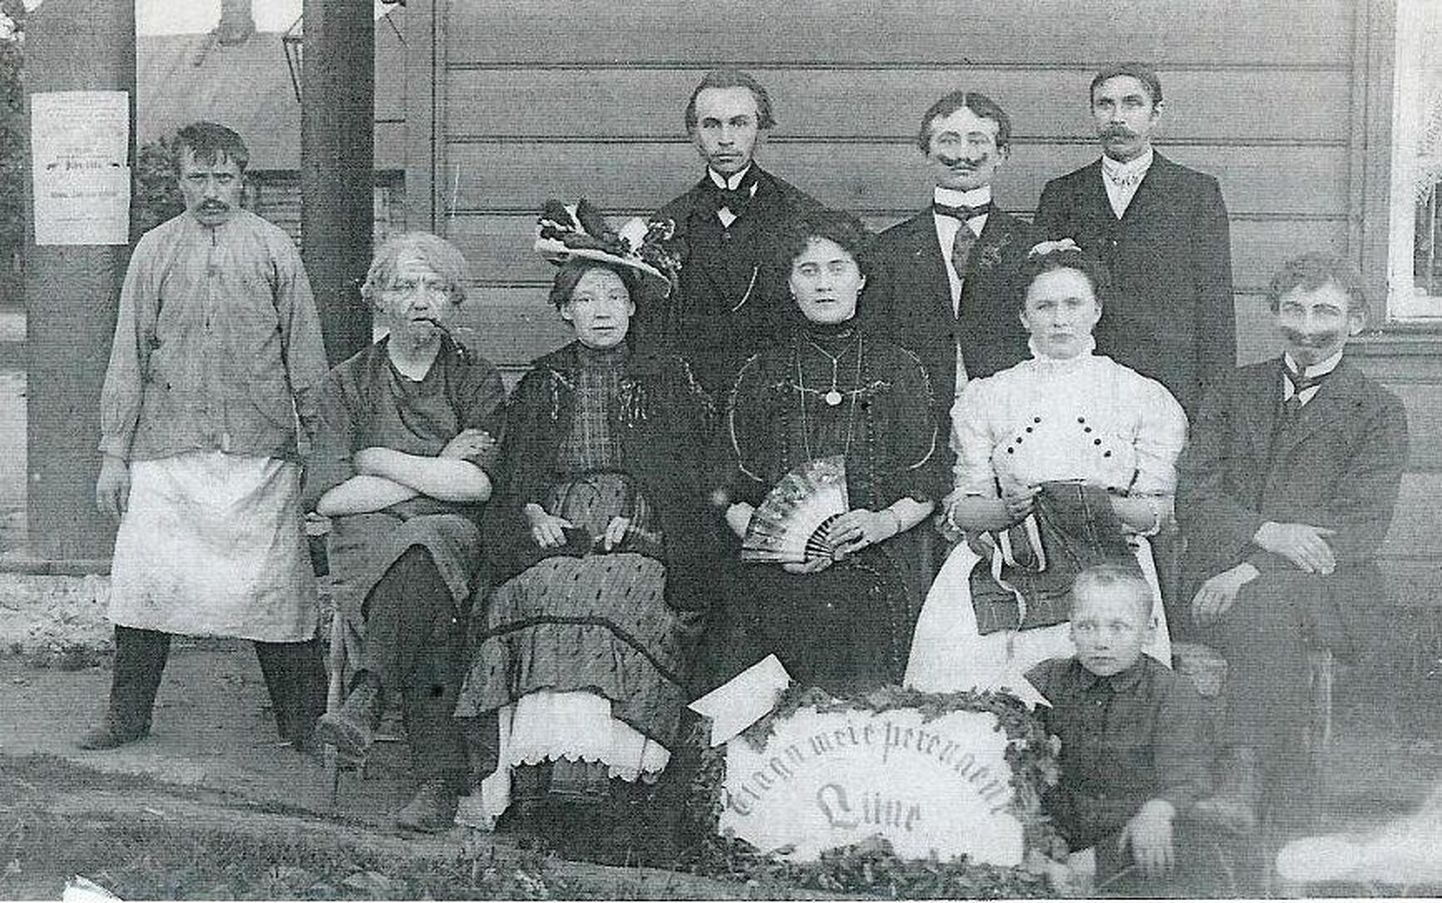 Fotol on 1907. aastal Viru-Nigulas toimunud etenduse tegelased.